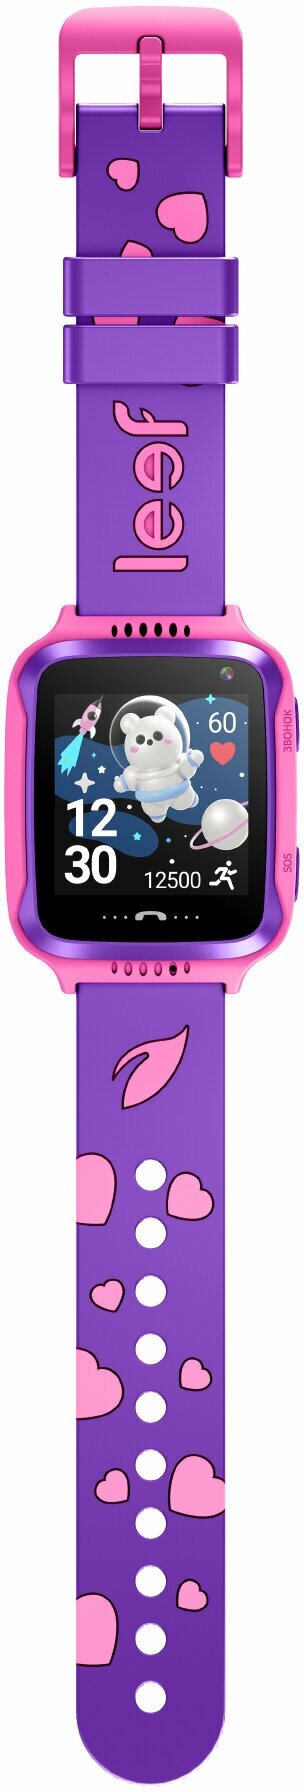 Часы-телефон Leef детские Kids Pulsar, фиолетово-розовые - фото №6